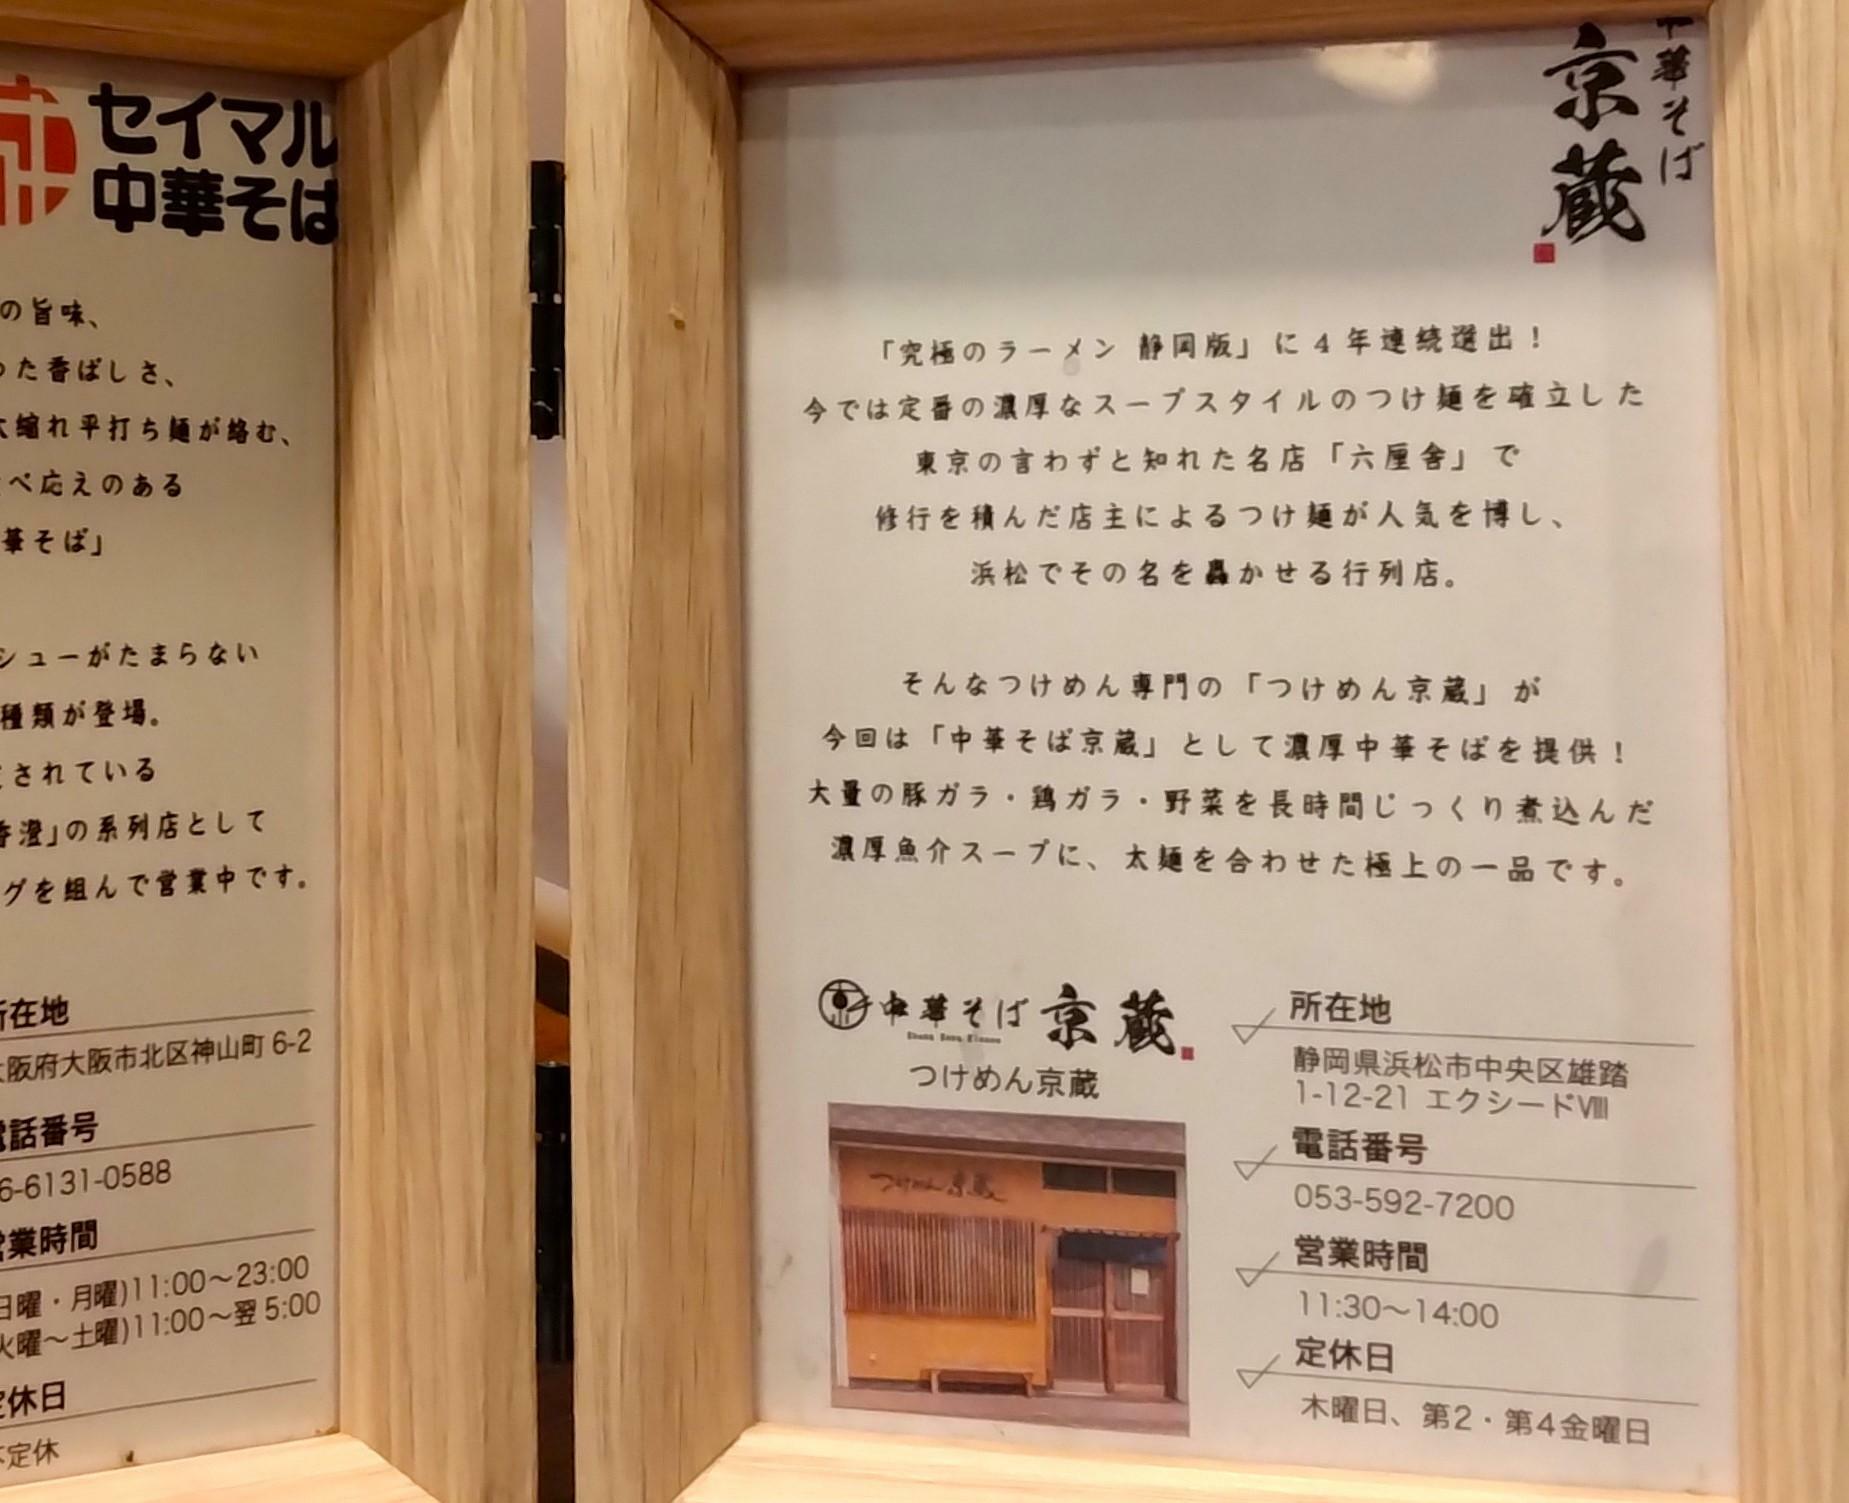 「つけ麺京蔵」の作る中華そばについての説明カード。